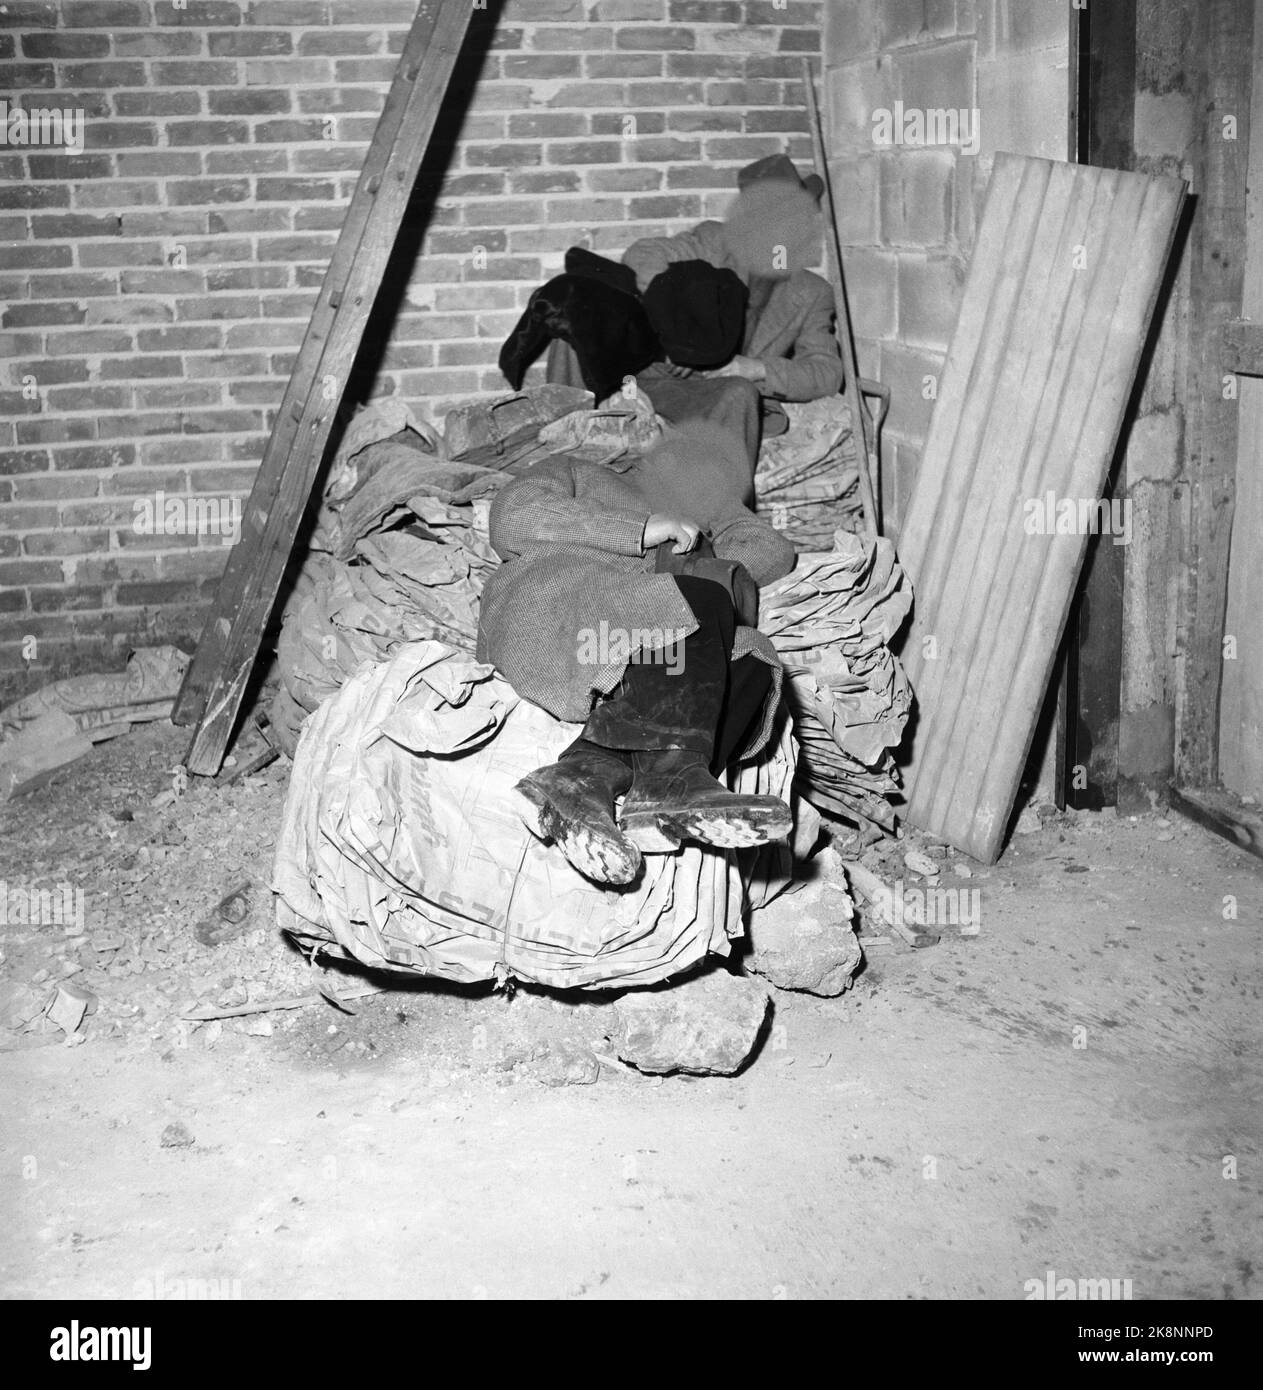 Oslo 19 gennaio 1957. Gli outlers di Oslo stanno cercando di trovare un posto dove dormire dove è caldo e caldo. Foto: Aage Storløkken / corrente / NTB Foto Stock